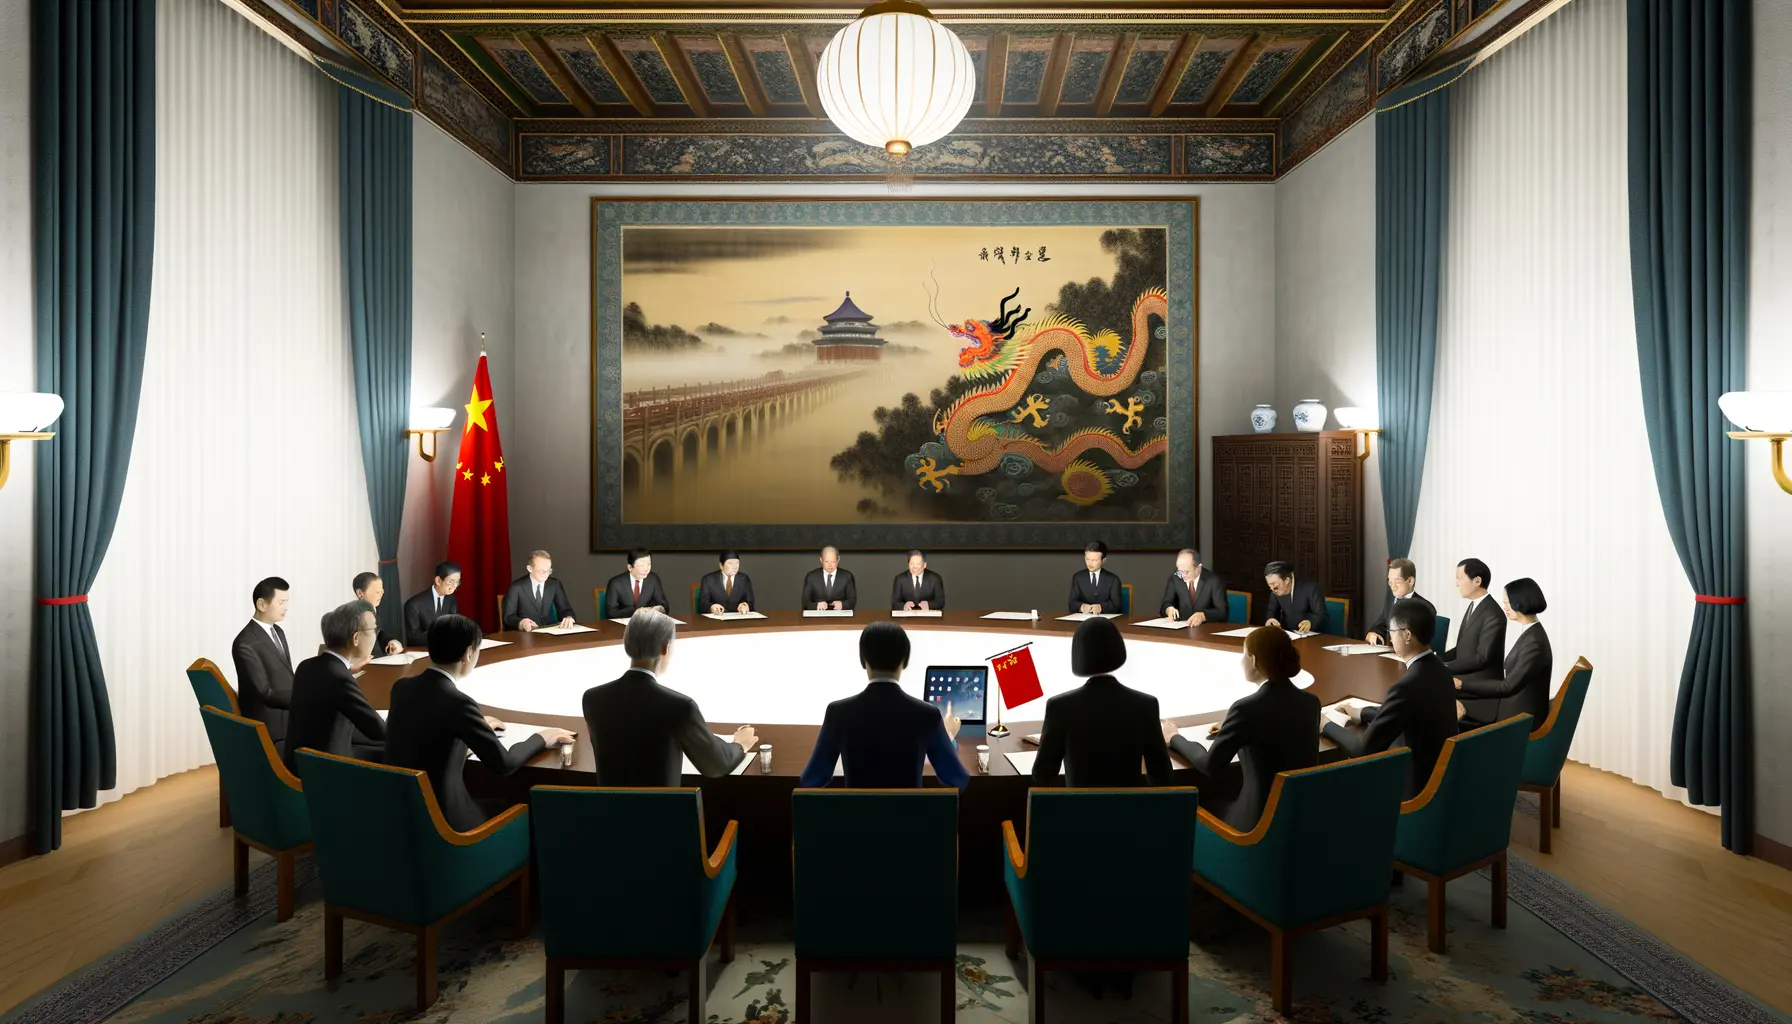 Atmosphärische Darstellung eines Treffens von Diplomaten